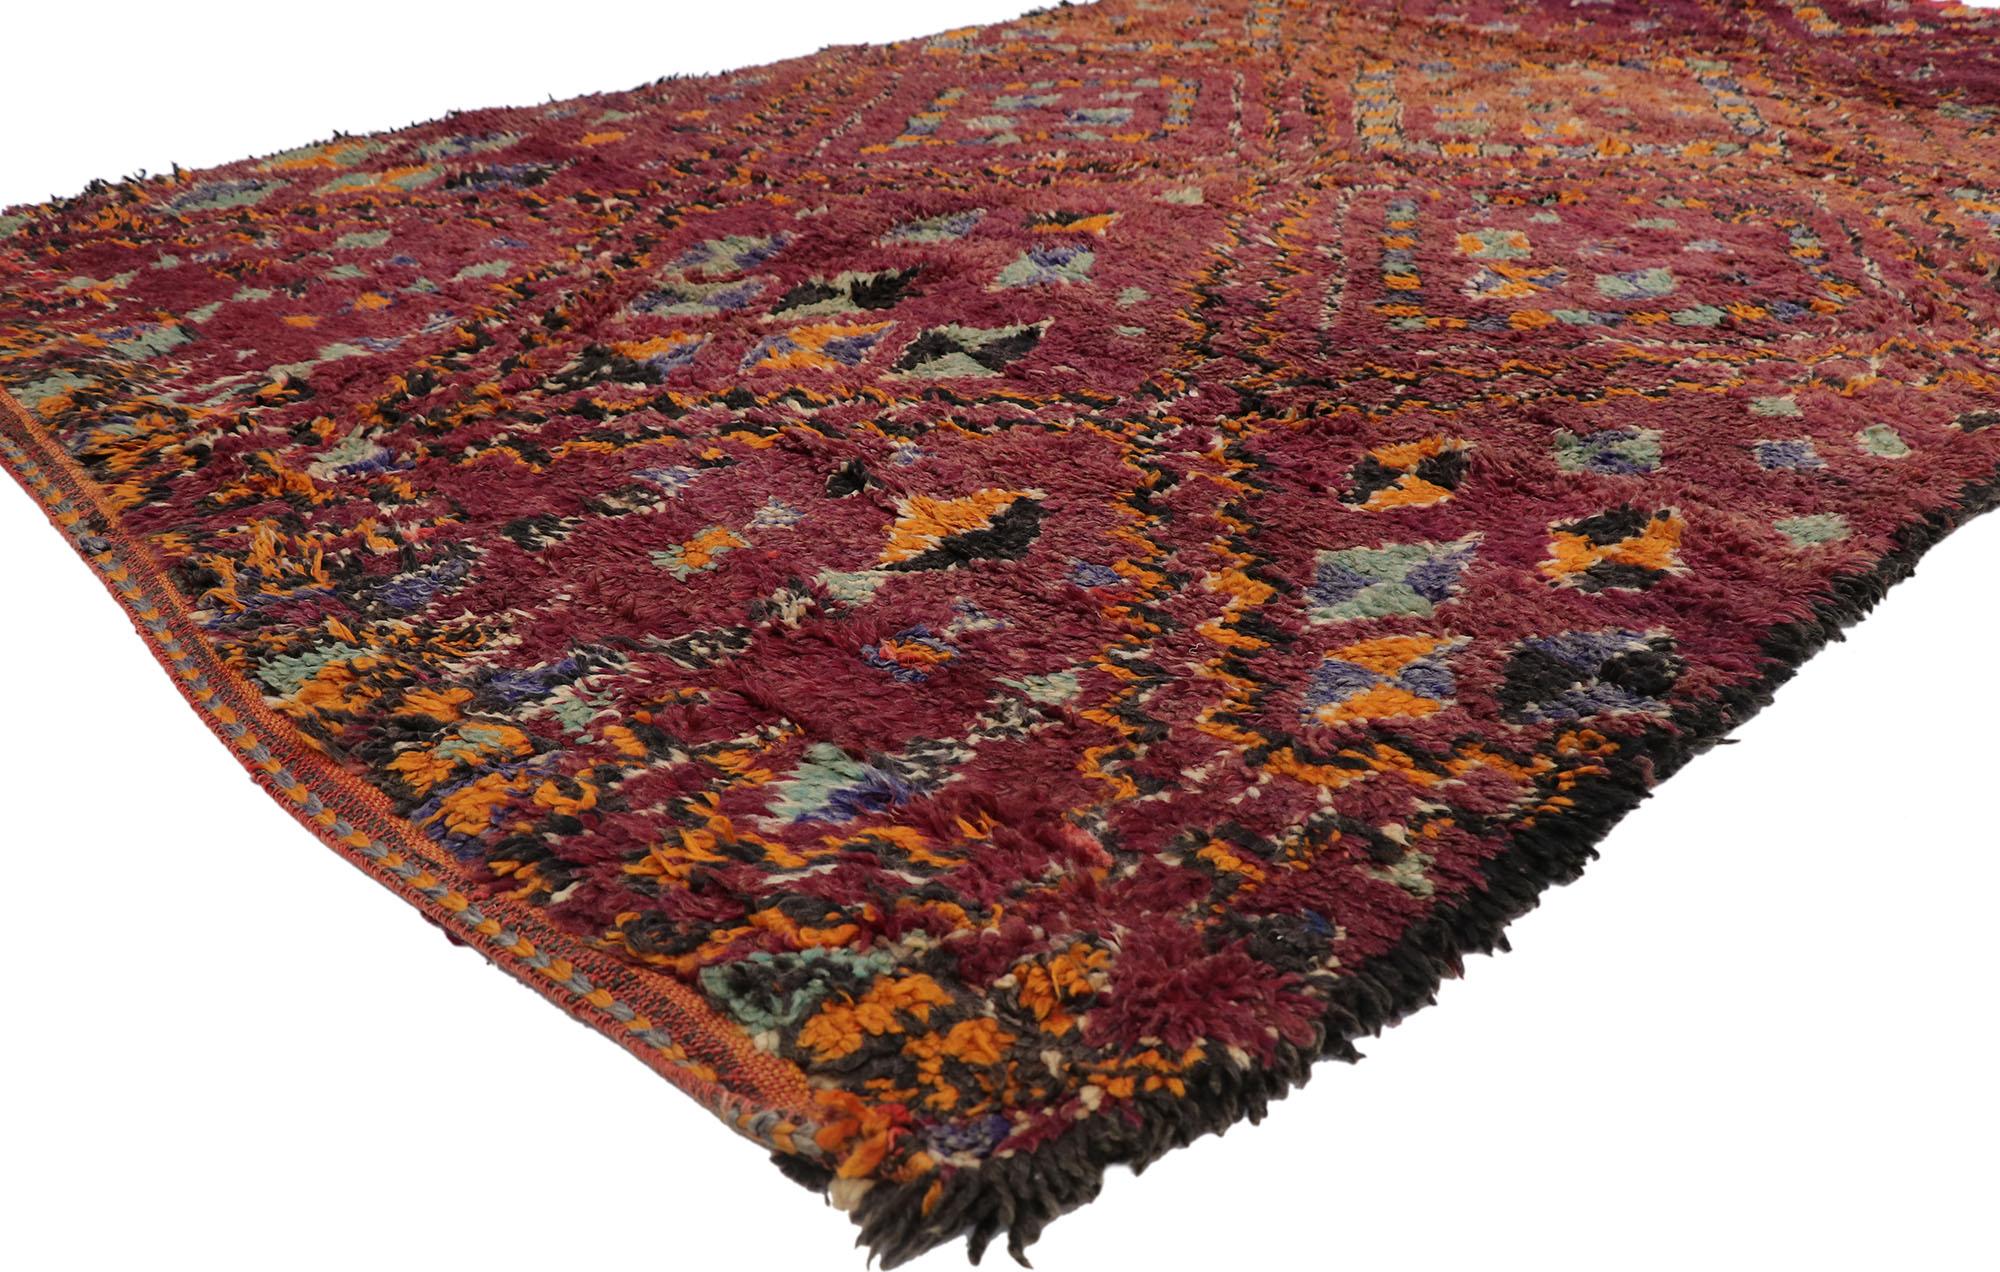 21244 Vintage Beni MGuild Marokkanischer Teppich, 06'03 x 11'00.
Dieser handgeknüpfte marokkanische Berberteppich aus Wolle mit seinem kühnen, ausdrucksstarken Design, seinen unglaublichen Details und seiner Textur ist eine fesselnde Vision von